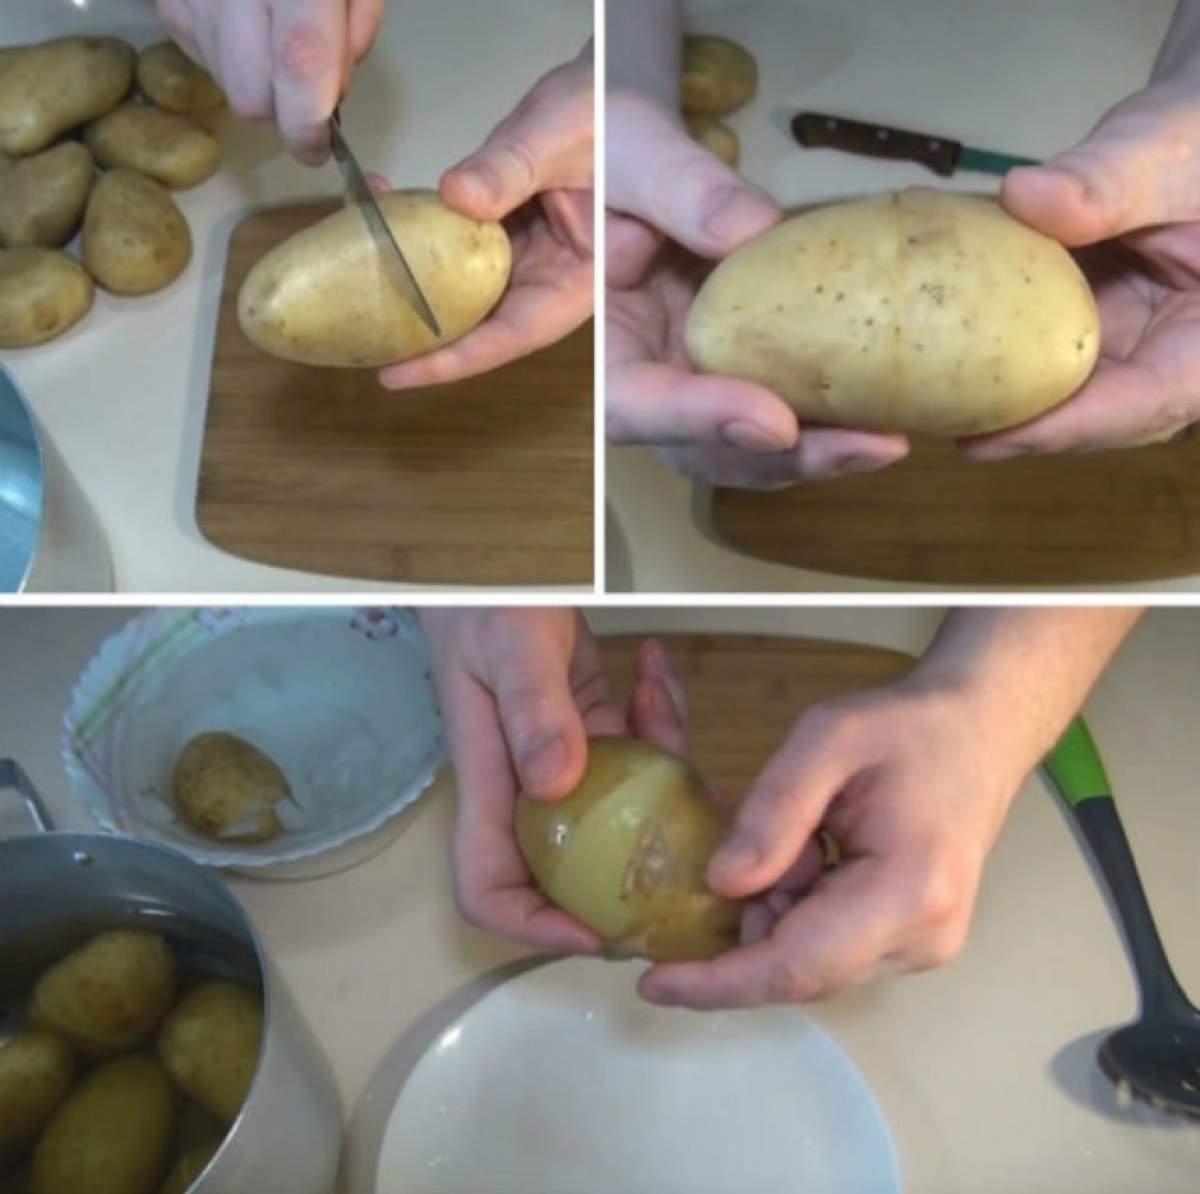 ÎNTREBAREA ZILEI: JOI - Ce se întâmplă dacă mănânci coaja de la cartofi?